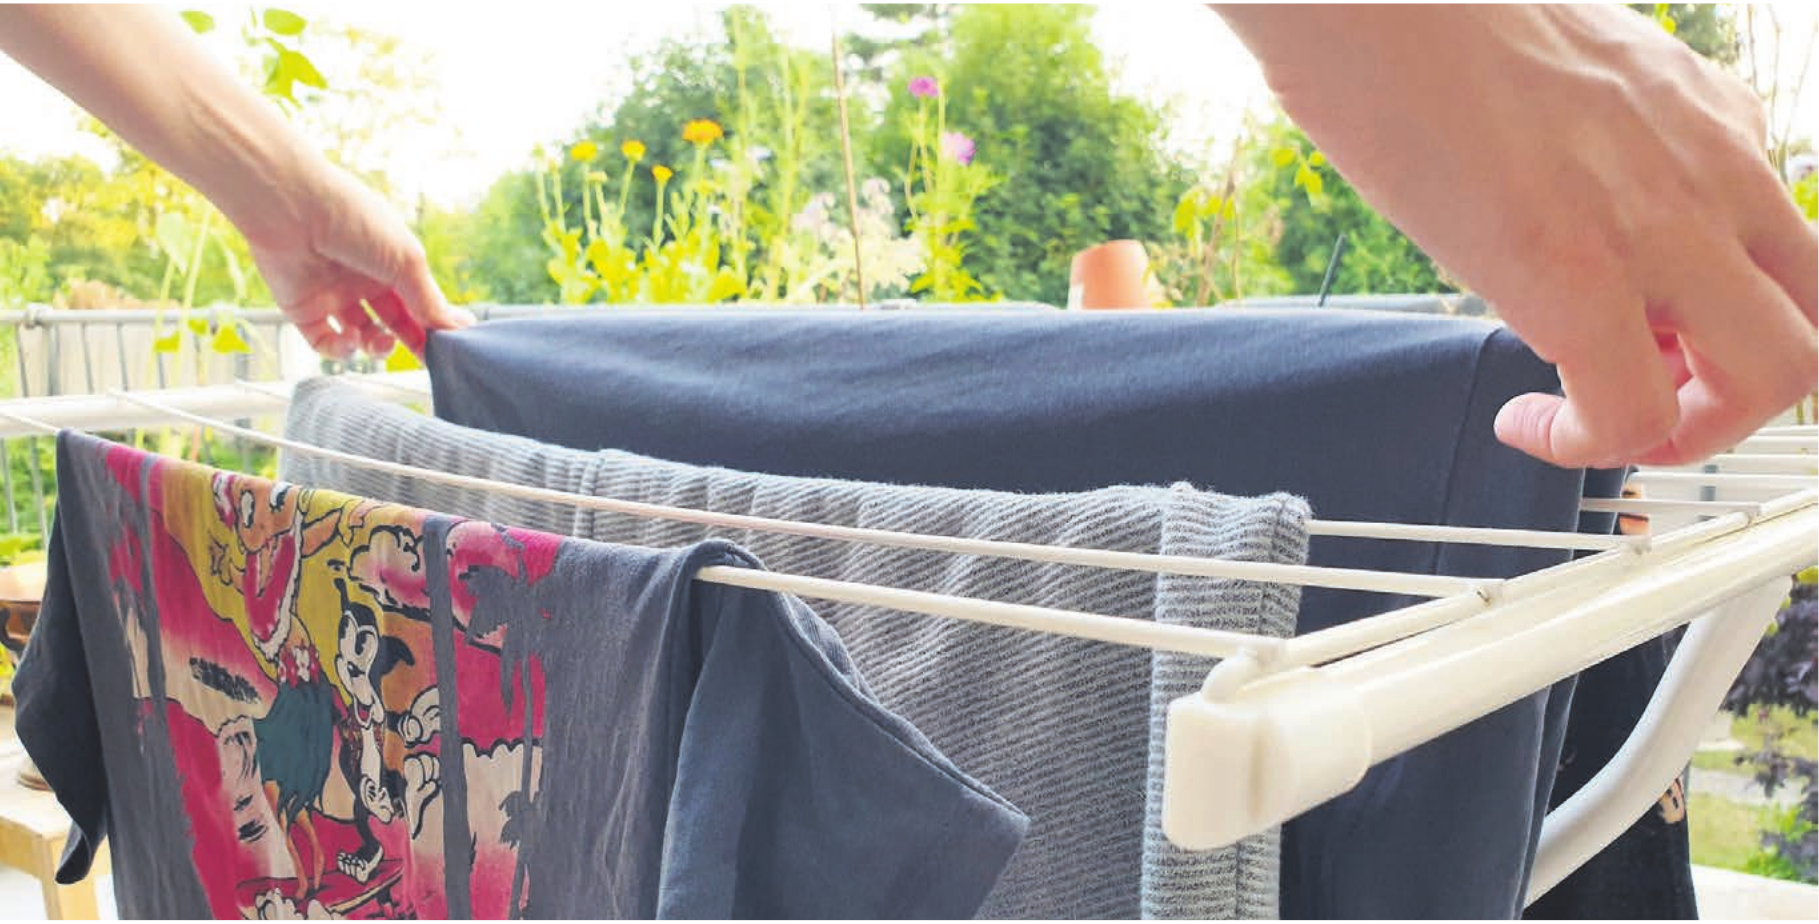 Bei den momentanen Temperaturen ist die Wäsche an der frischen Luft schnell trocken – und man benötigt dafür keinerlei Energie. Bild: spr